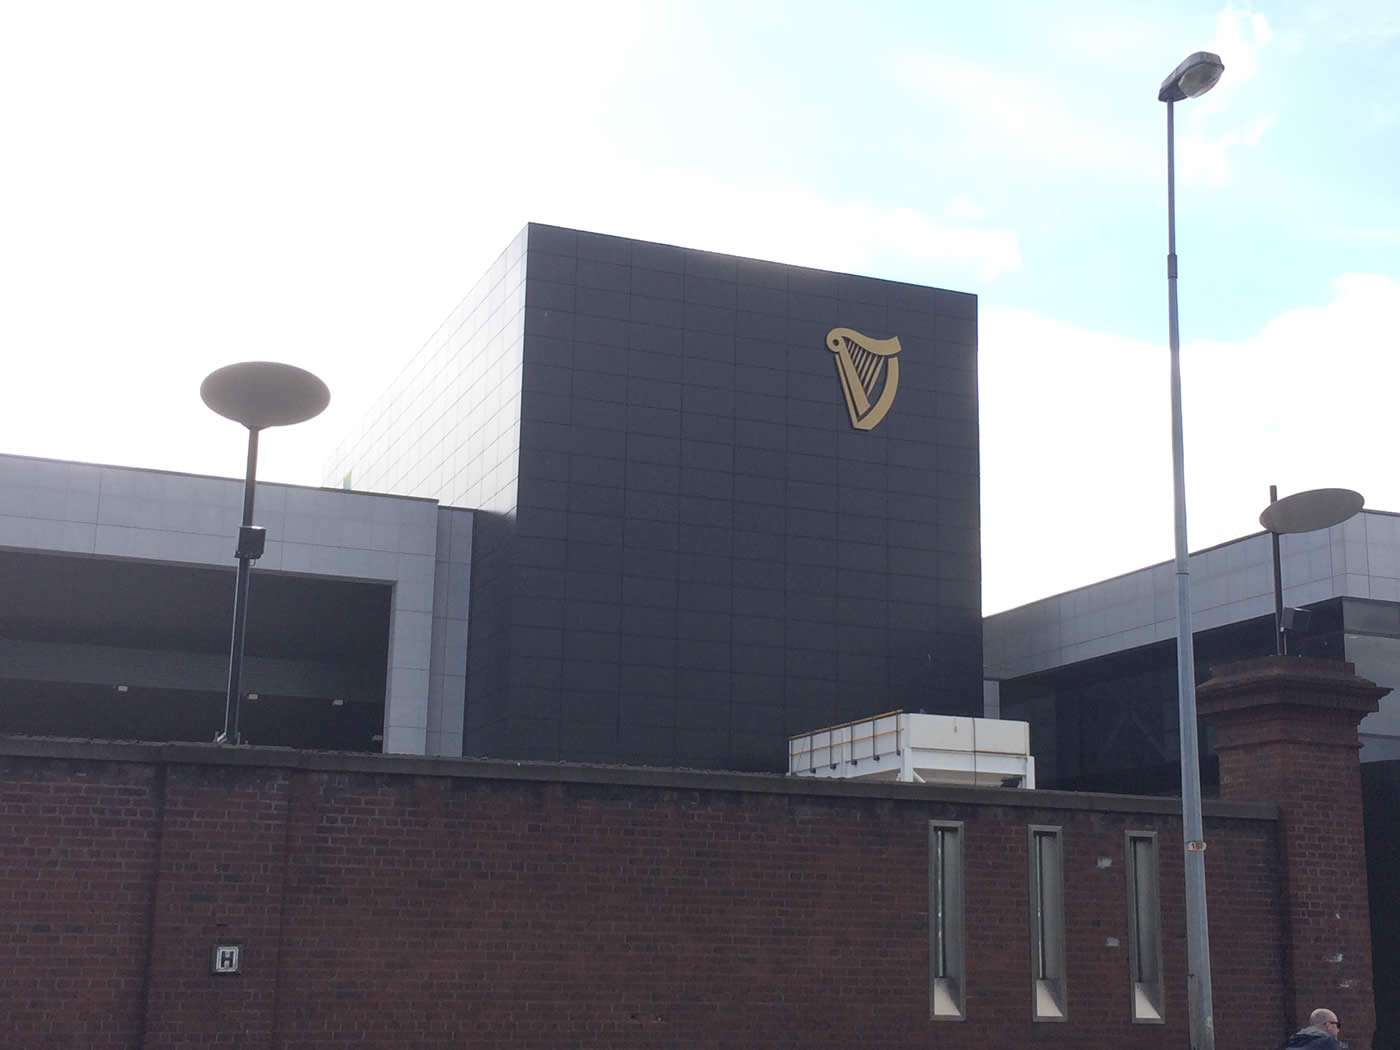 Guinness, Dublin